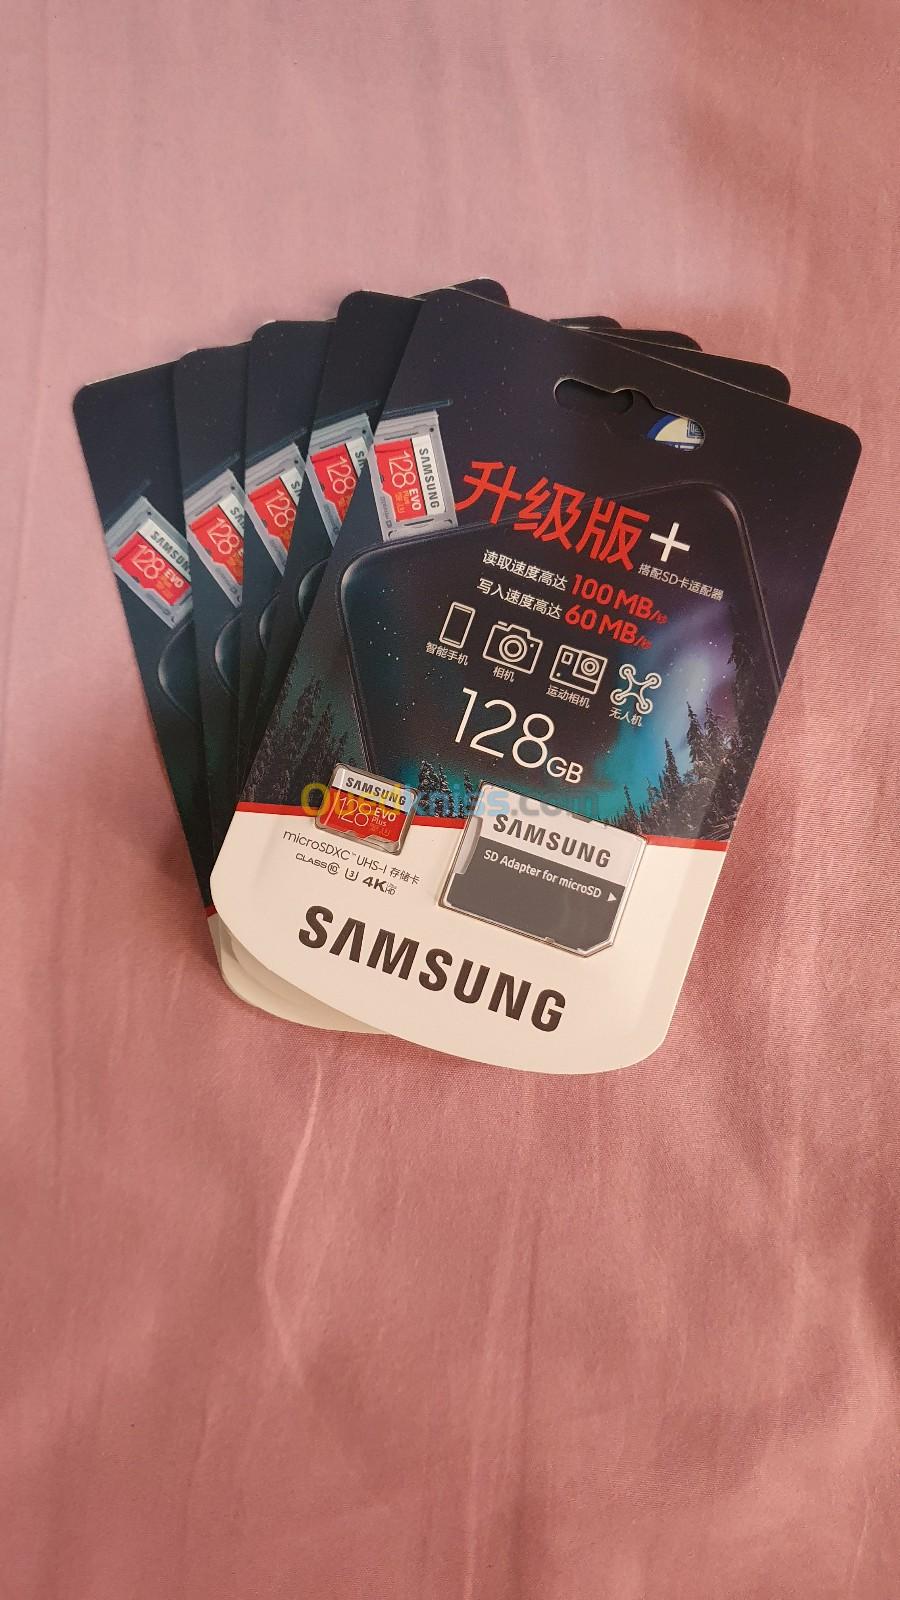 Samsung ORIGINAL 128 GB SD CARD